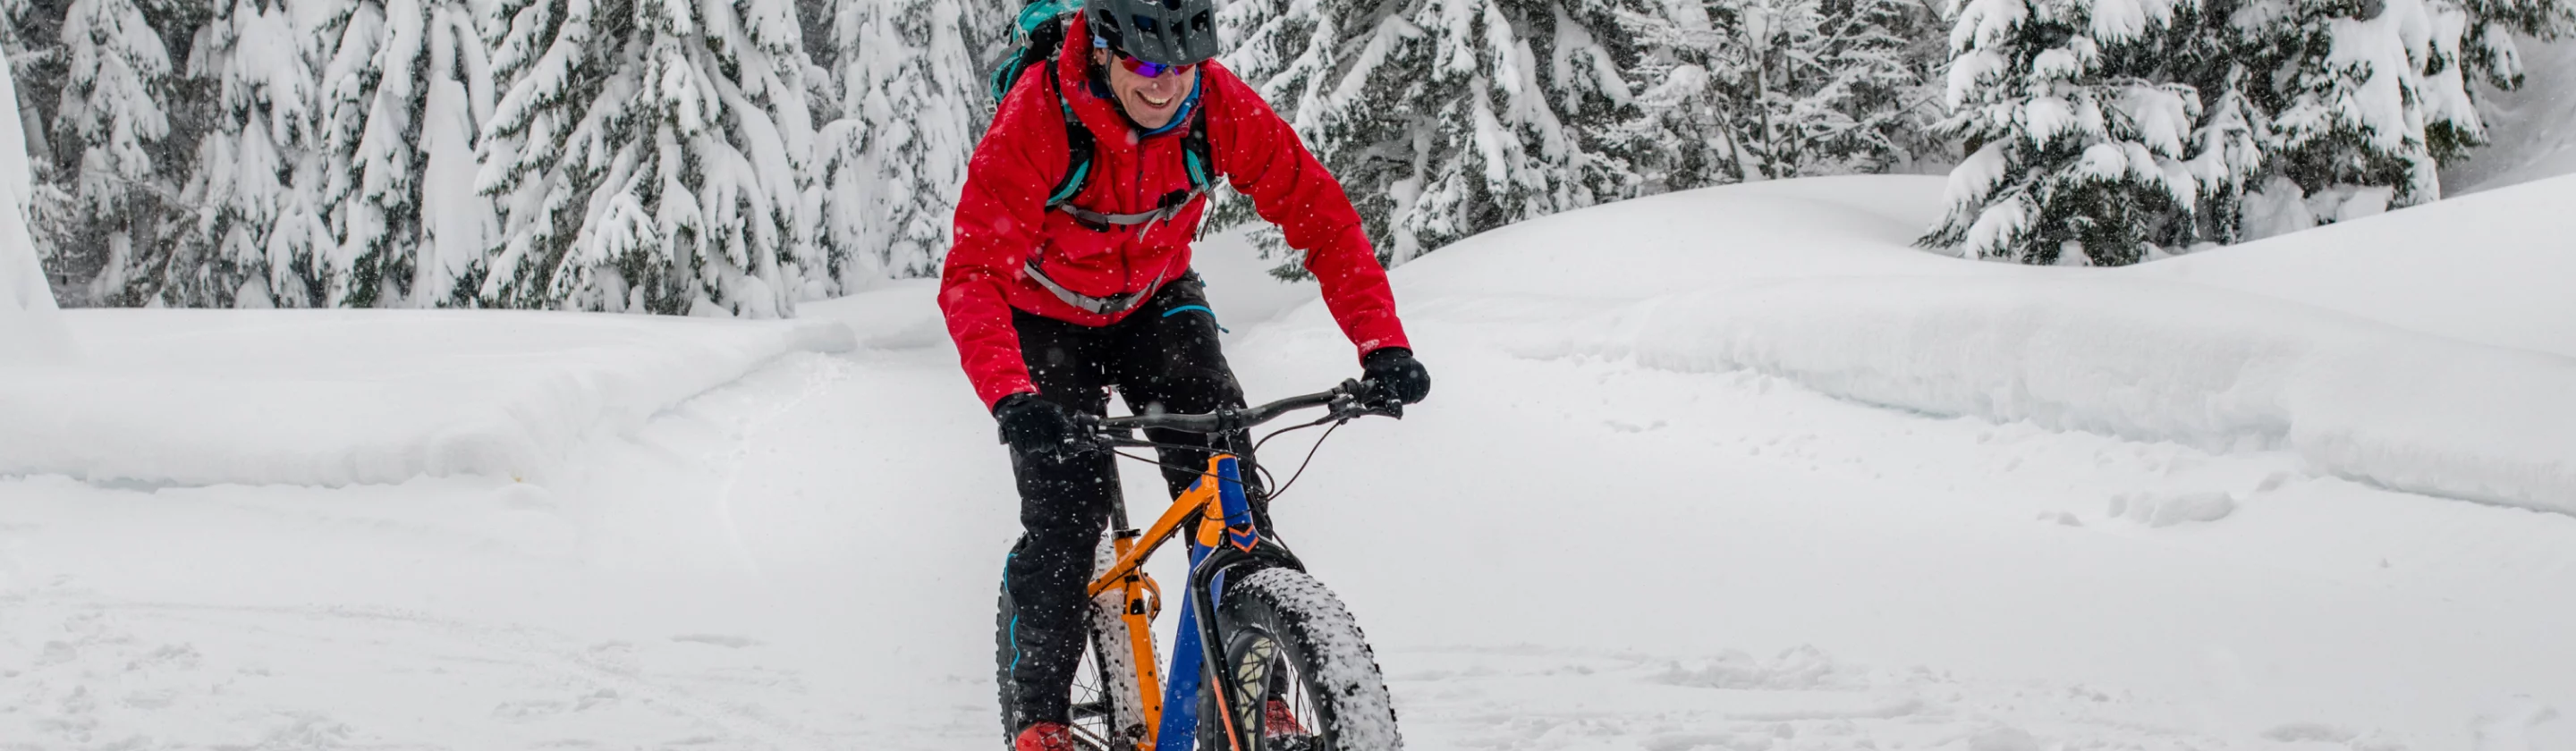 Entraînement au vélo de course en hiver : conseils pour l